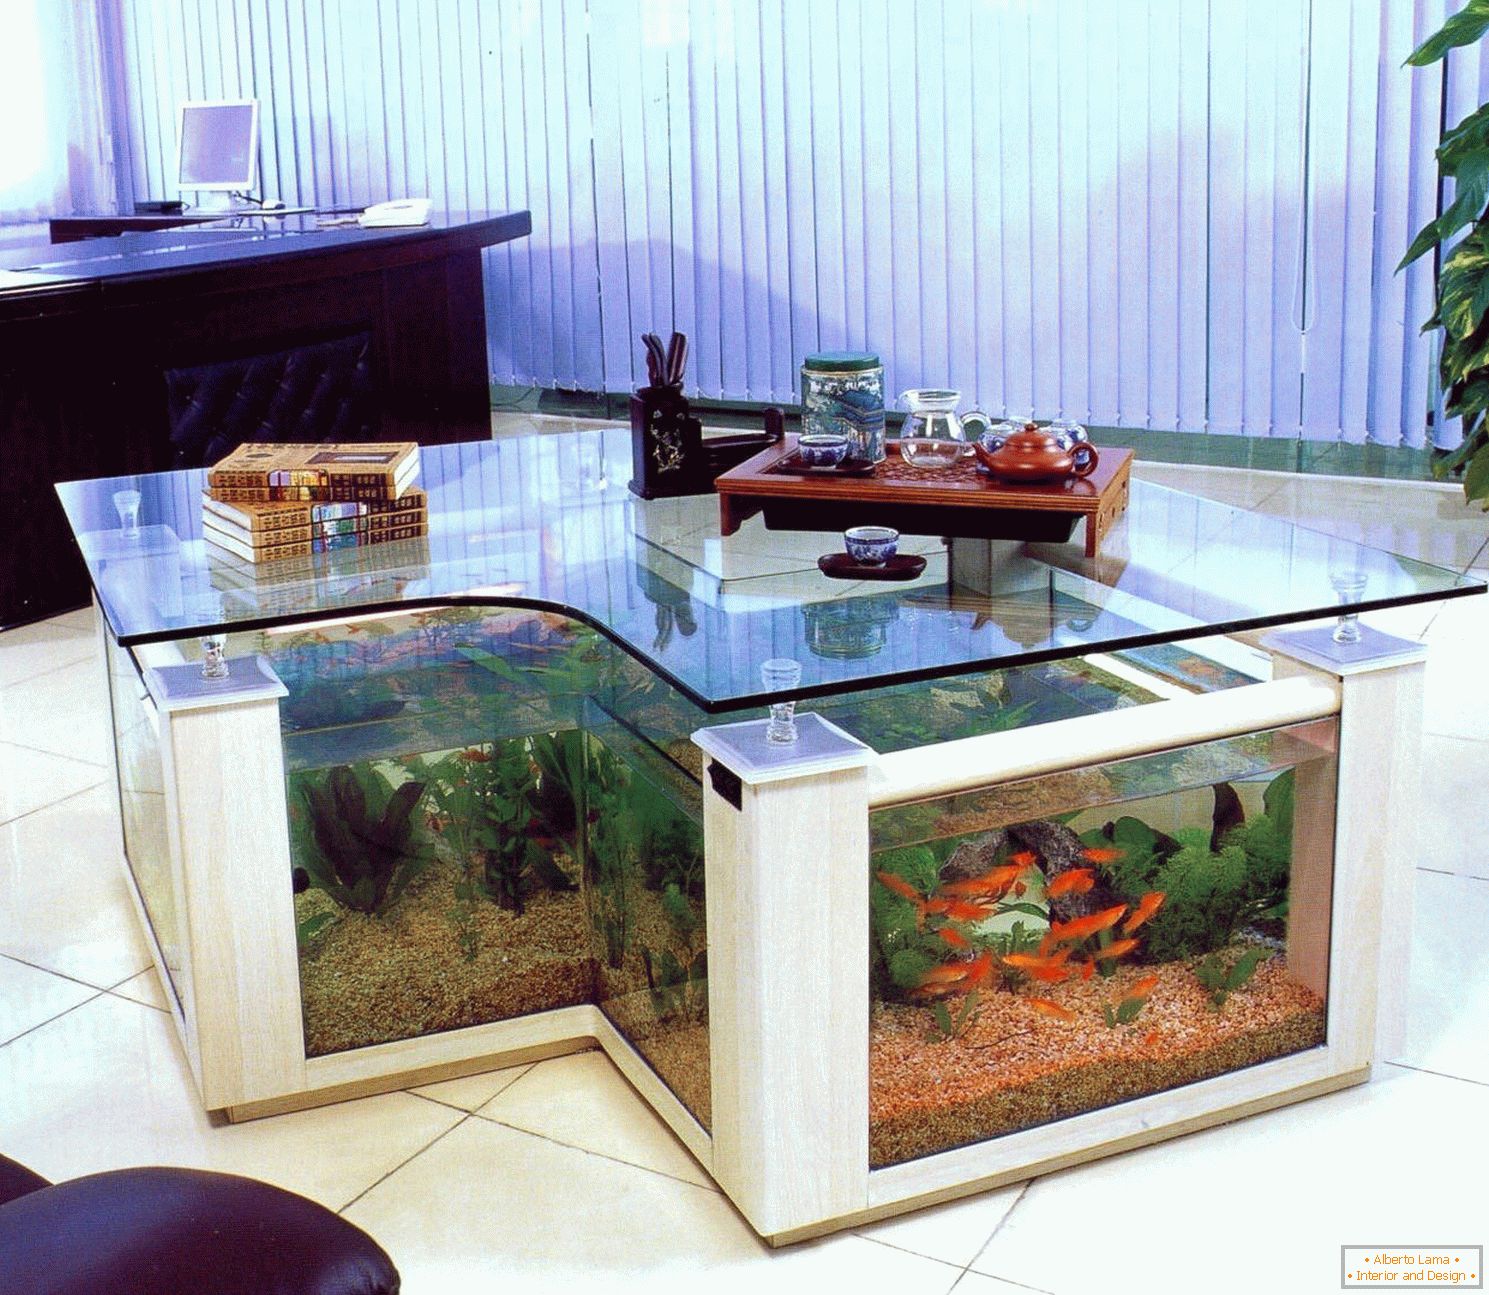 Table-aquarium in the office